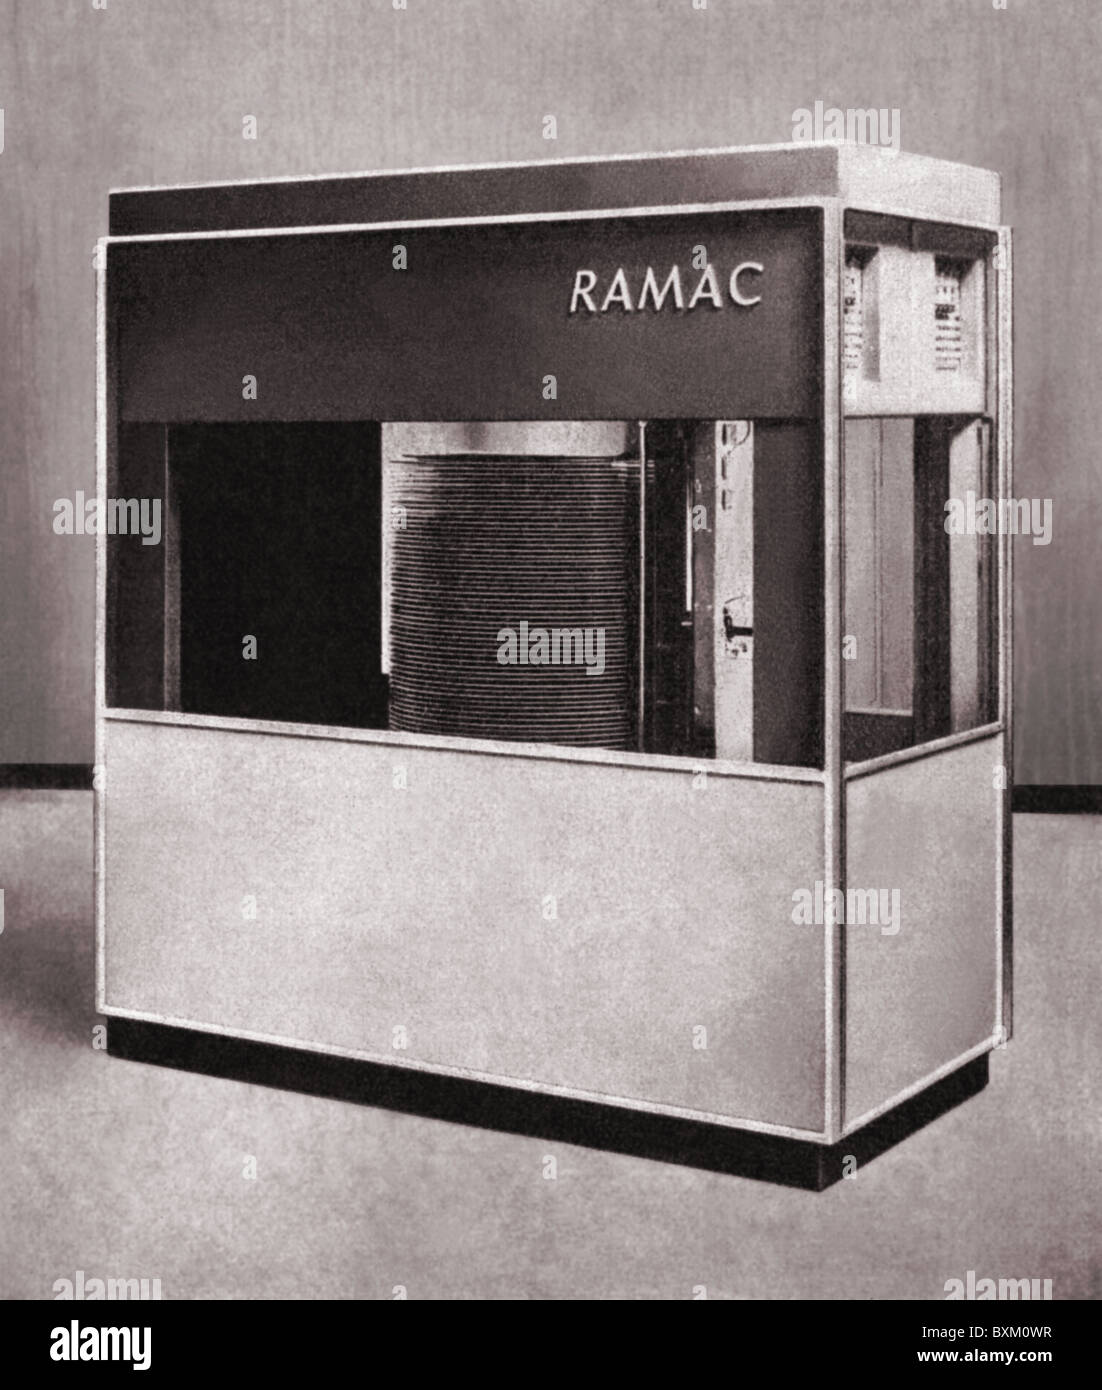 Informatique / électronique, matériel, mémoire de disque magnétique IBM, RAMAC, USA, 1956, droits supplémentaires-Clearences-non disponible Banque D'Images